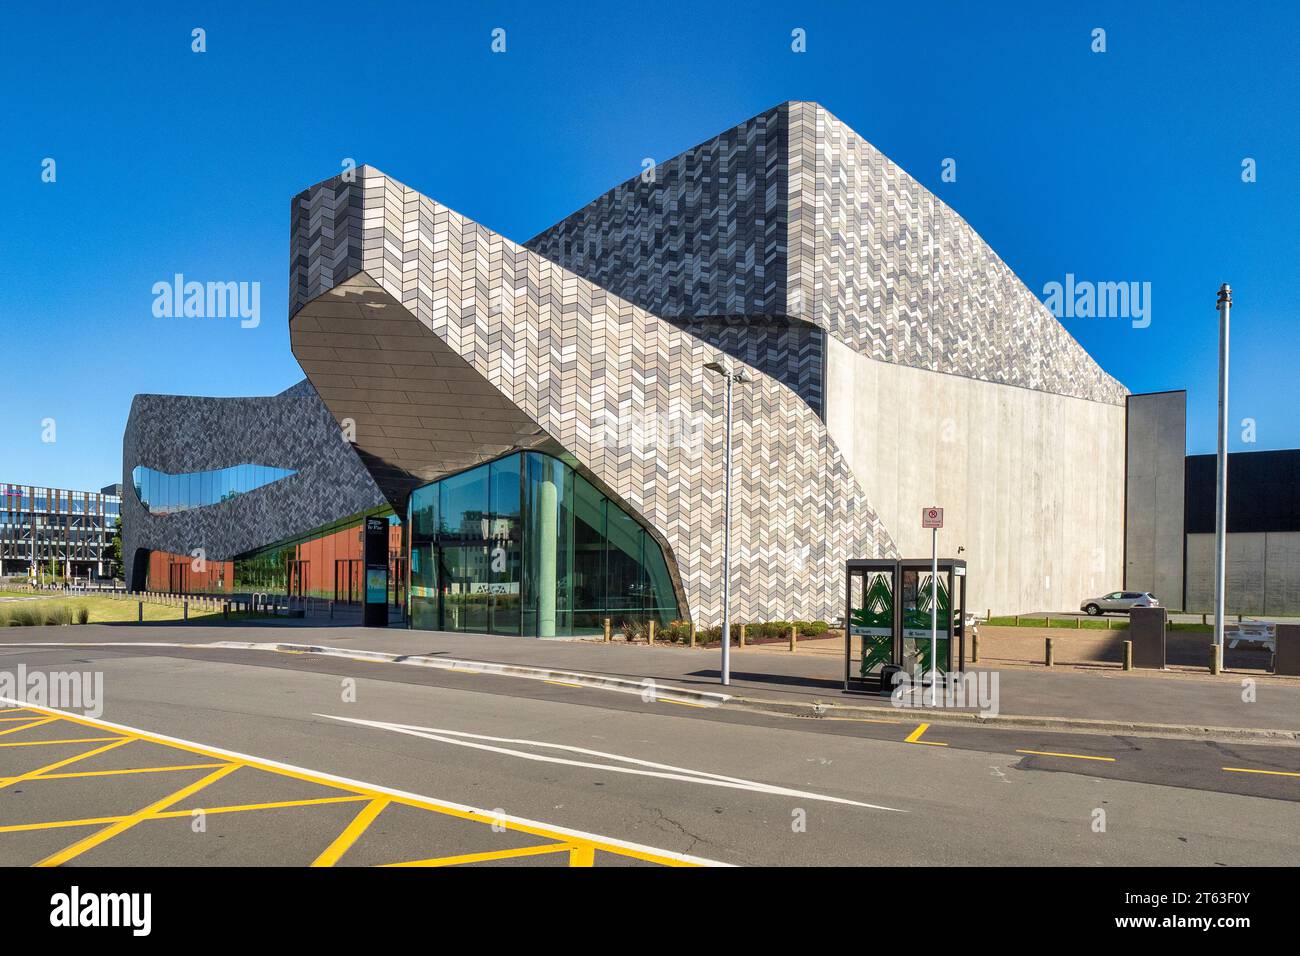 29 de diciembre de 2022: Christchurch, Canterbury, Nueva Zelanda - Centro de Convenciones Te Pae, una parte central de la reconstrucción de Christchurch después de febrero Foto de stock